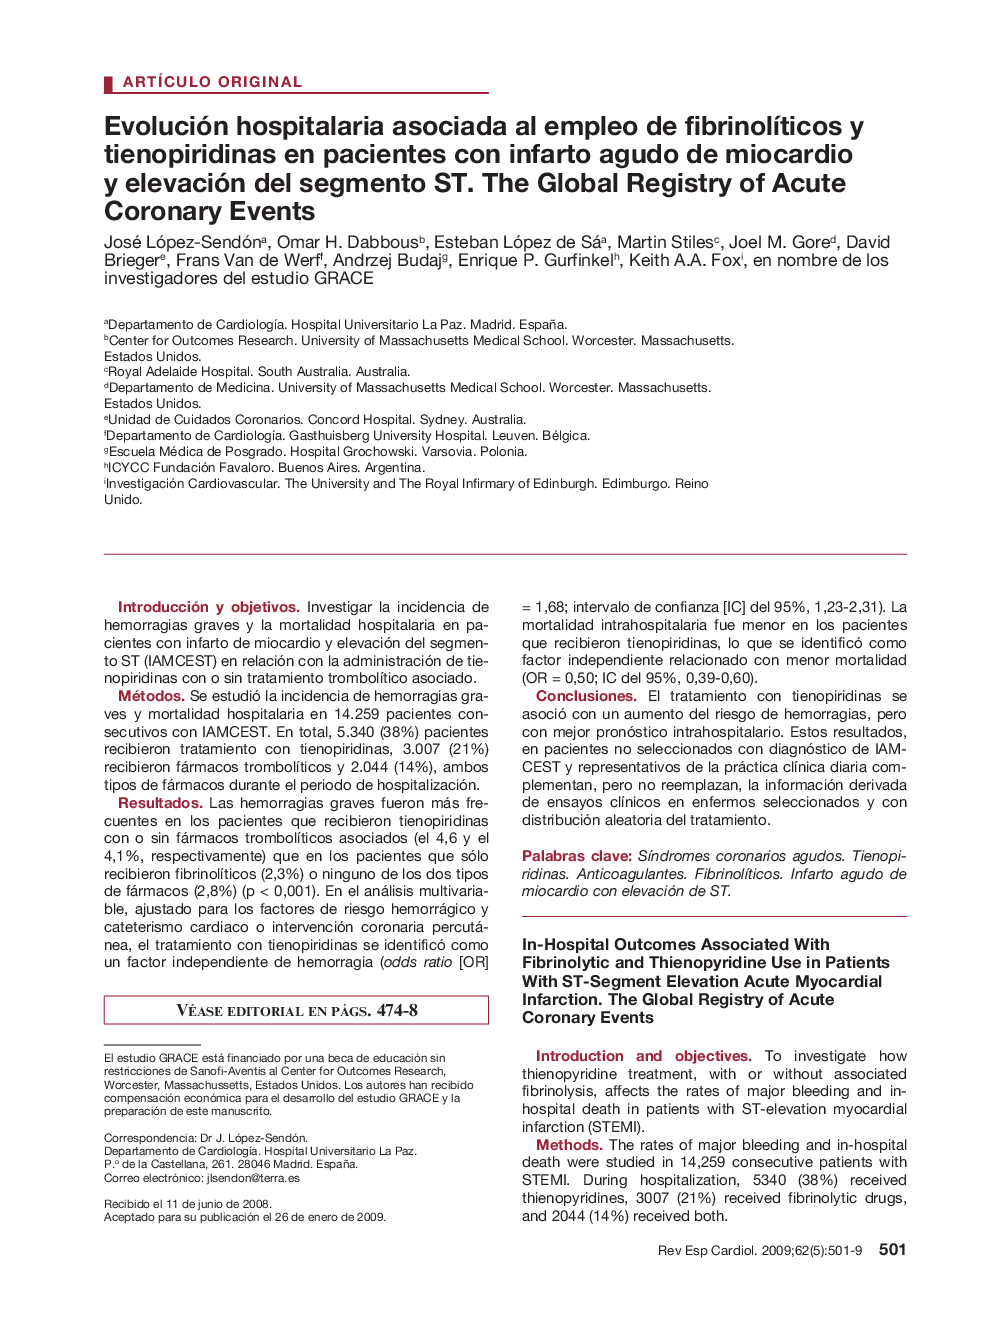 Evolución hospitalaria asociada al empleo de fibrinolÃ­ticos y tienopiridinas en pacientes con infarto agudo de miocardio y elevación del segmento ST. The Global Registry of Acute Coronary Events